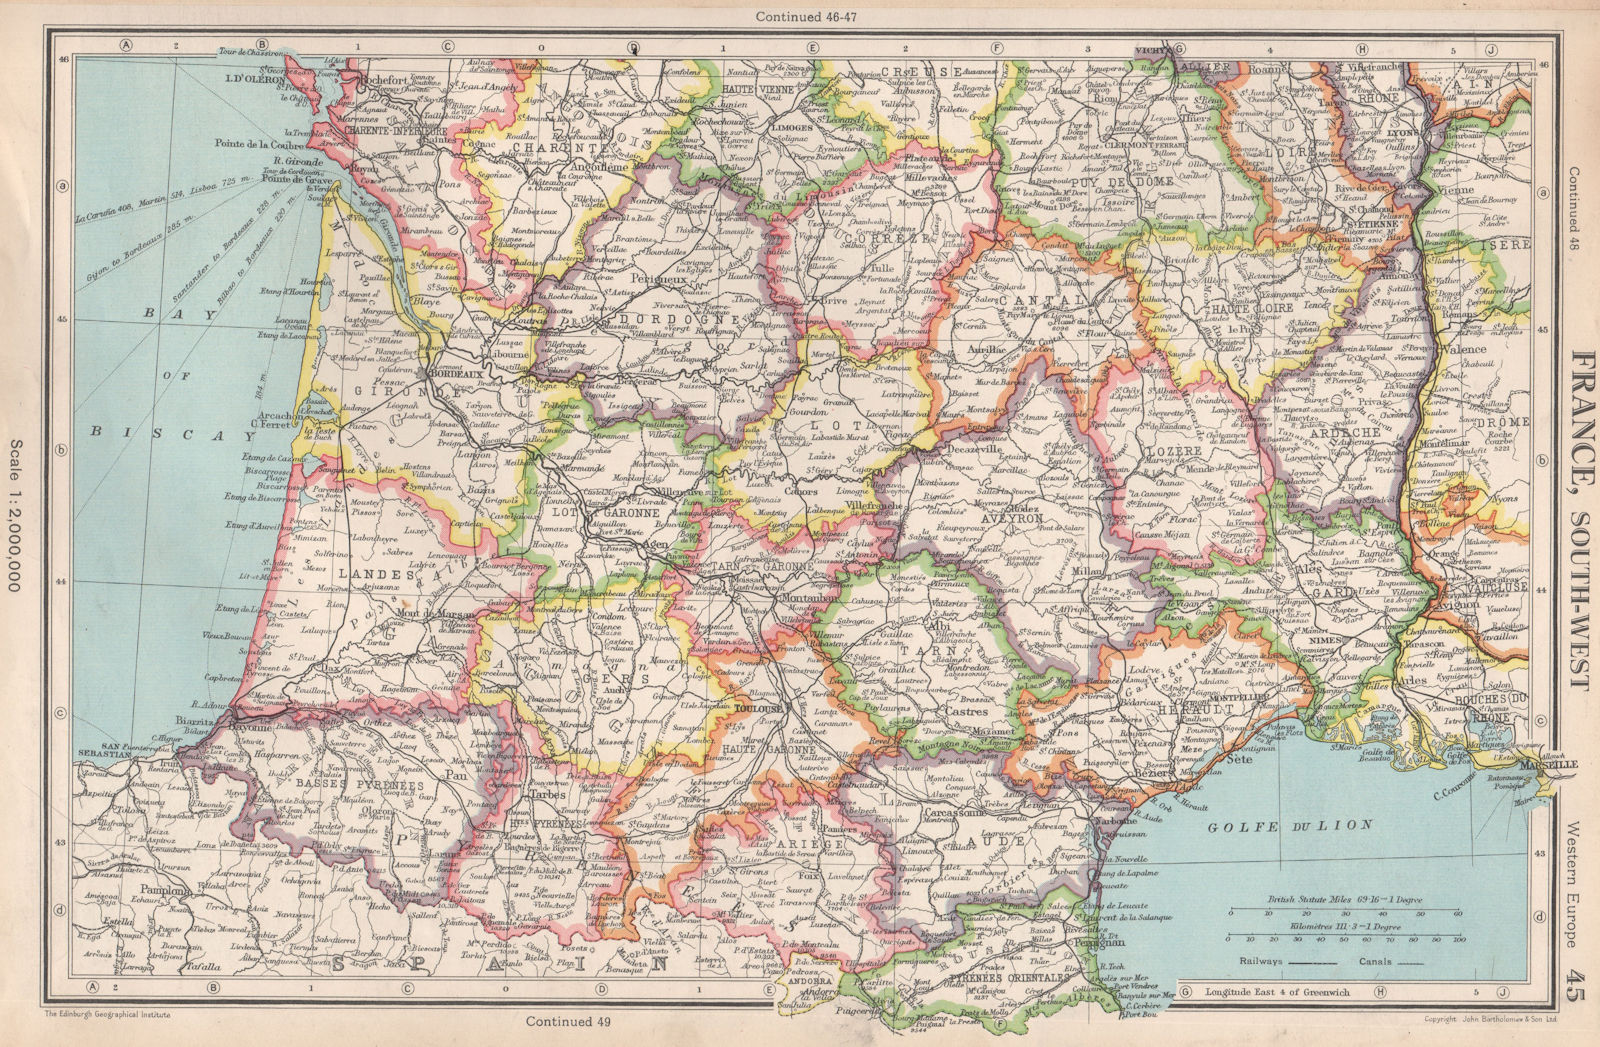 FRANCE SOUTH-WEST. Departements. BARTHOLOMEW 1952 old vintage map plan chart